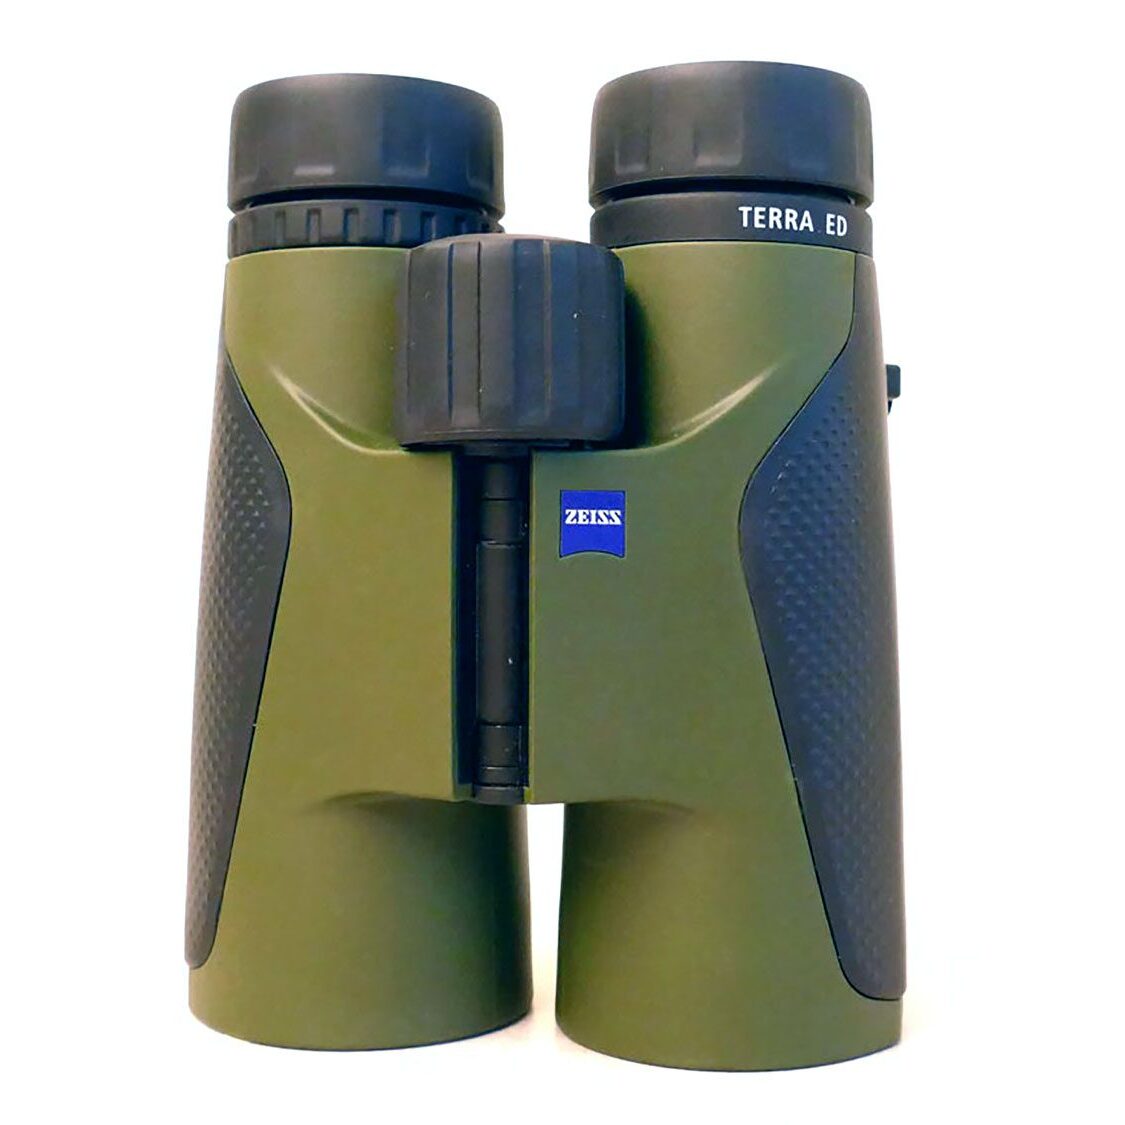 Zeiss Terra ED 8x42 binoculars.